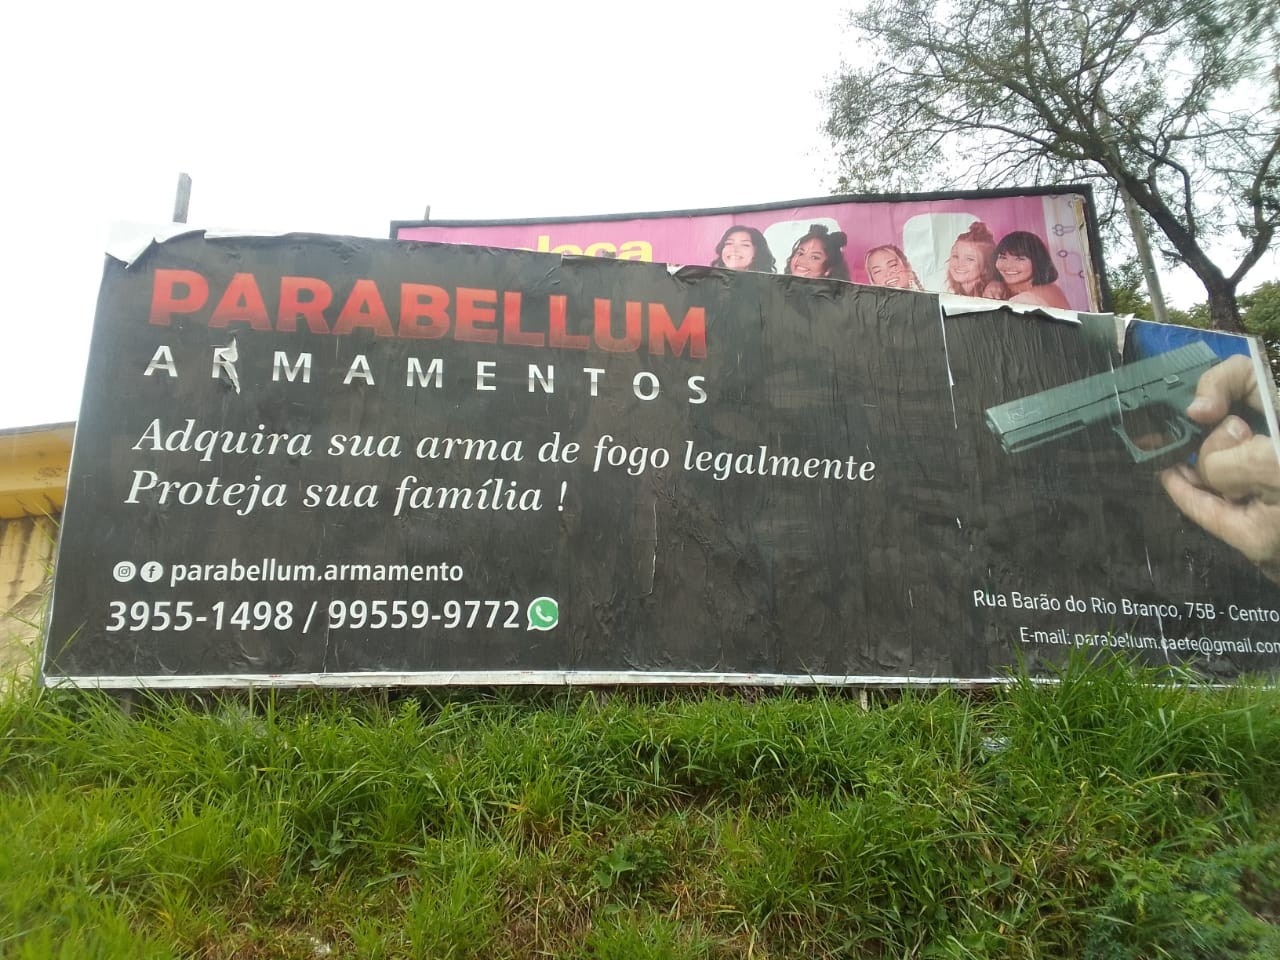 Contrariando lei federal, outdoors 'vendem' armamentos em Caeté, na Grande BH: 'Proteja sua família'